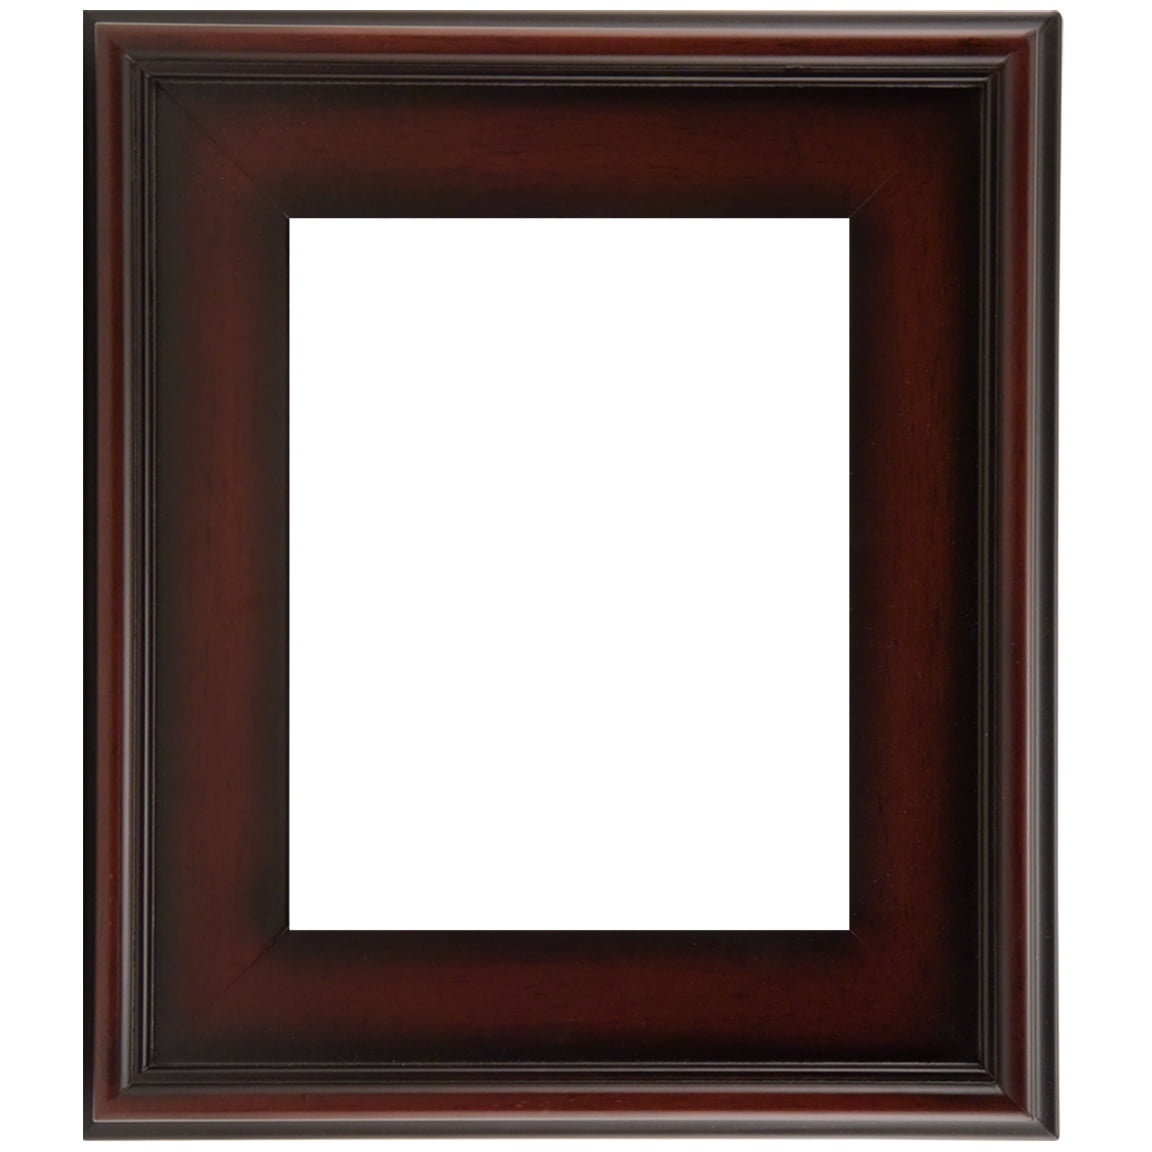 Plein Air Style Frame, Gold 6x6 - Box of 10